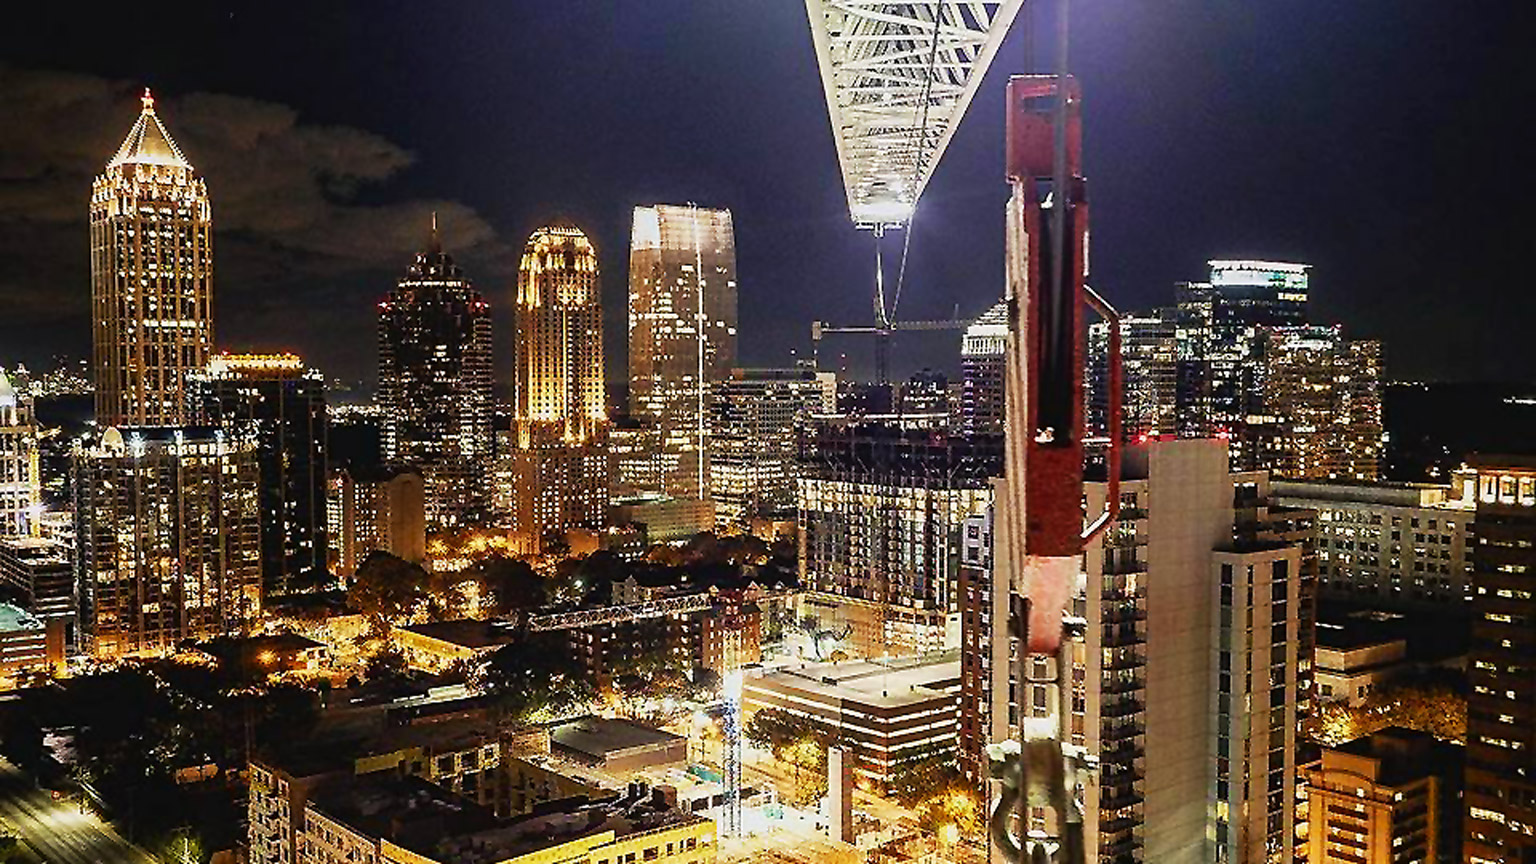 The City of Atlanta and a construction crane set up at night.